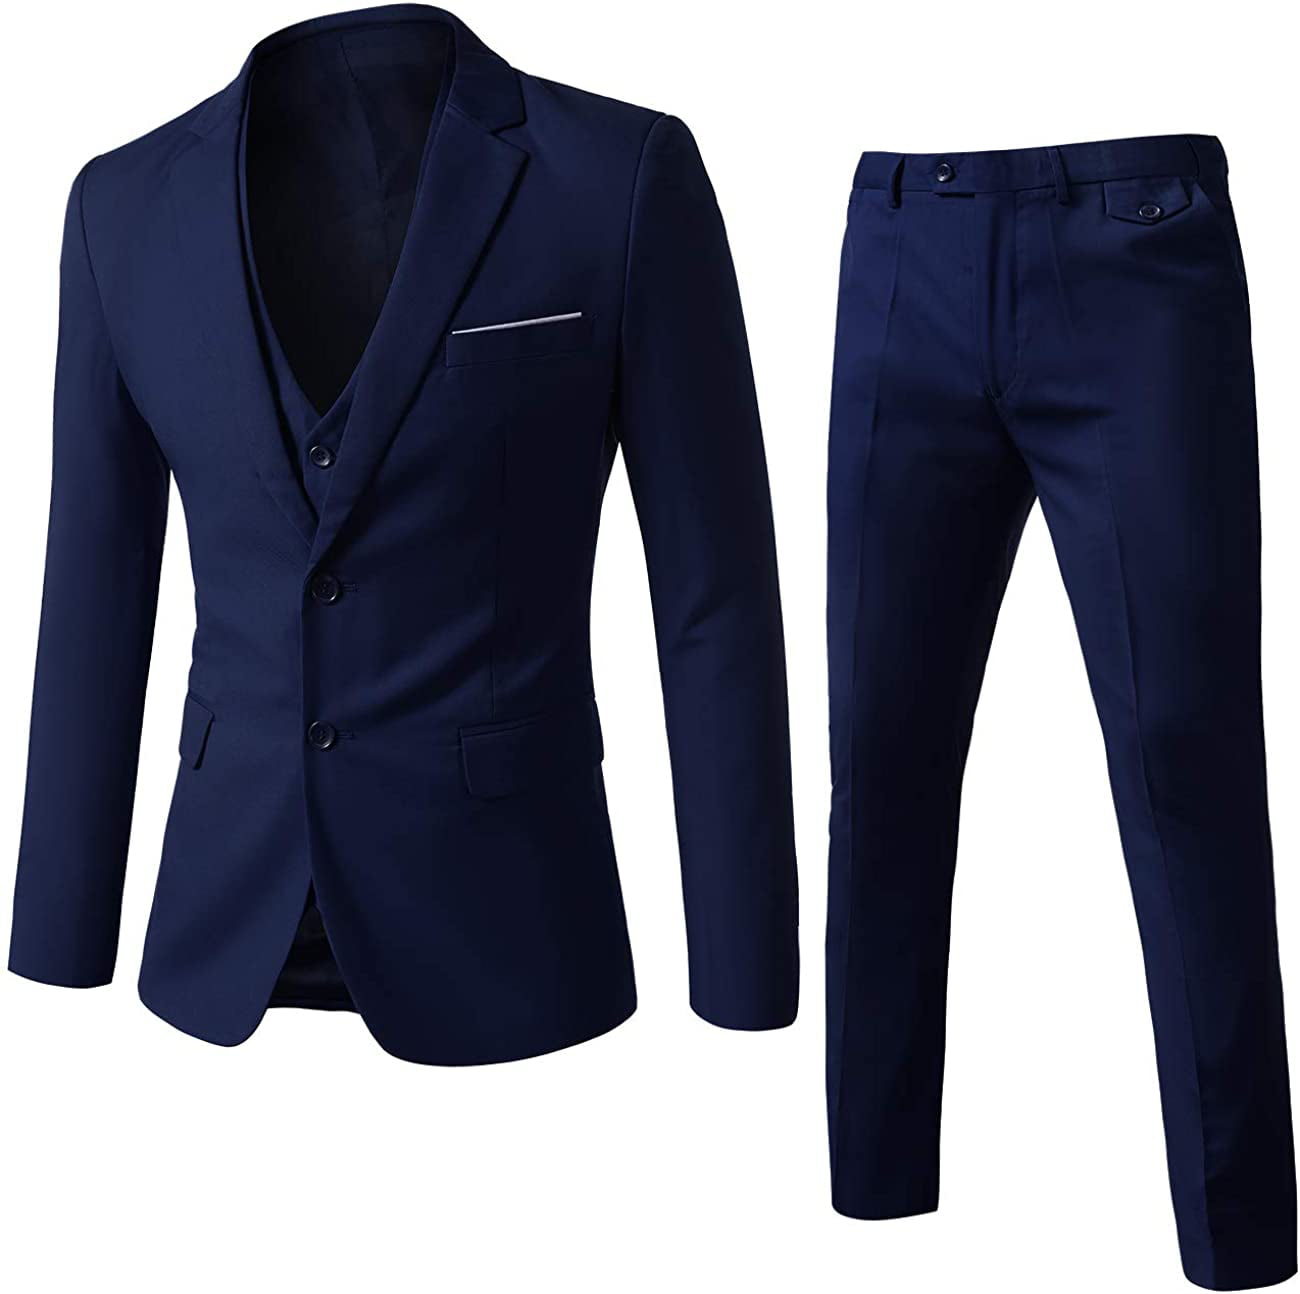 Details about   Mens Suit Coat Blazer Button Plain Business Casual Jacket Formal Smart Outwear 